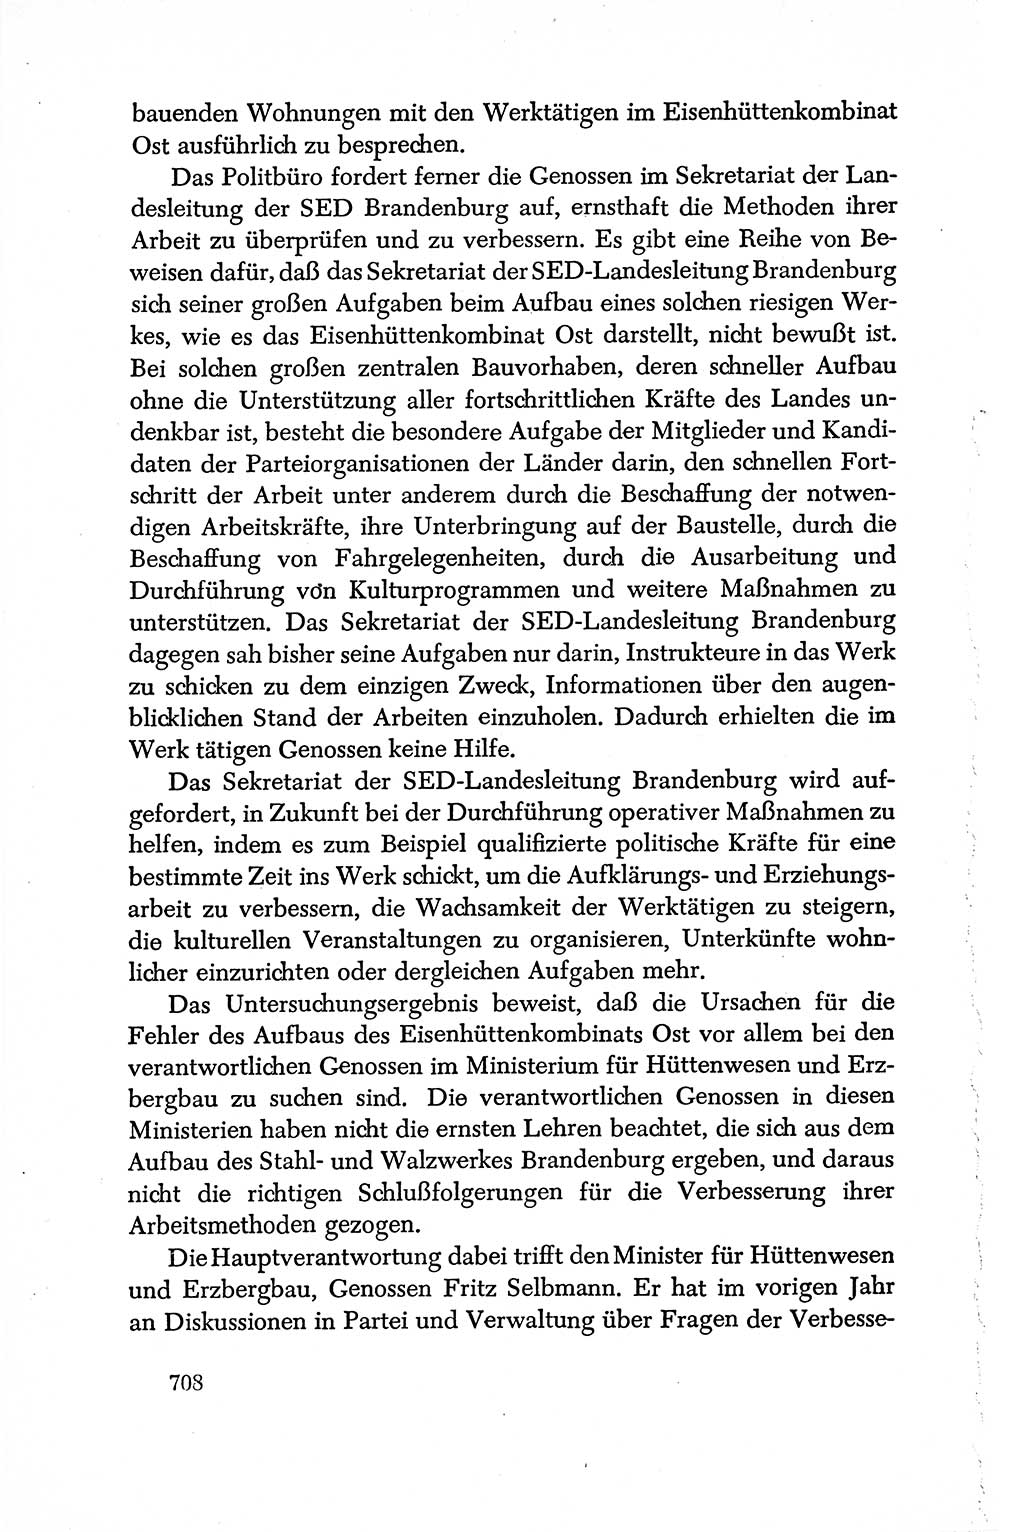 Dokumente der Sozialistischen Einheitspartei Deutschlands (SED) [Deutsche Demokratische Republik (DDR)] 1950-1952, Seite 708 (Dok. SED DDR 1950-1952, S. 708)